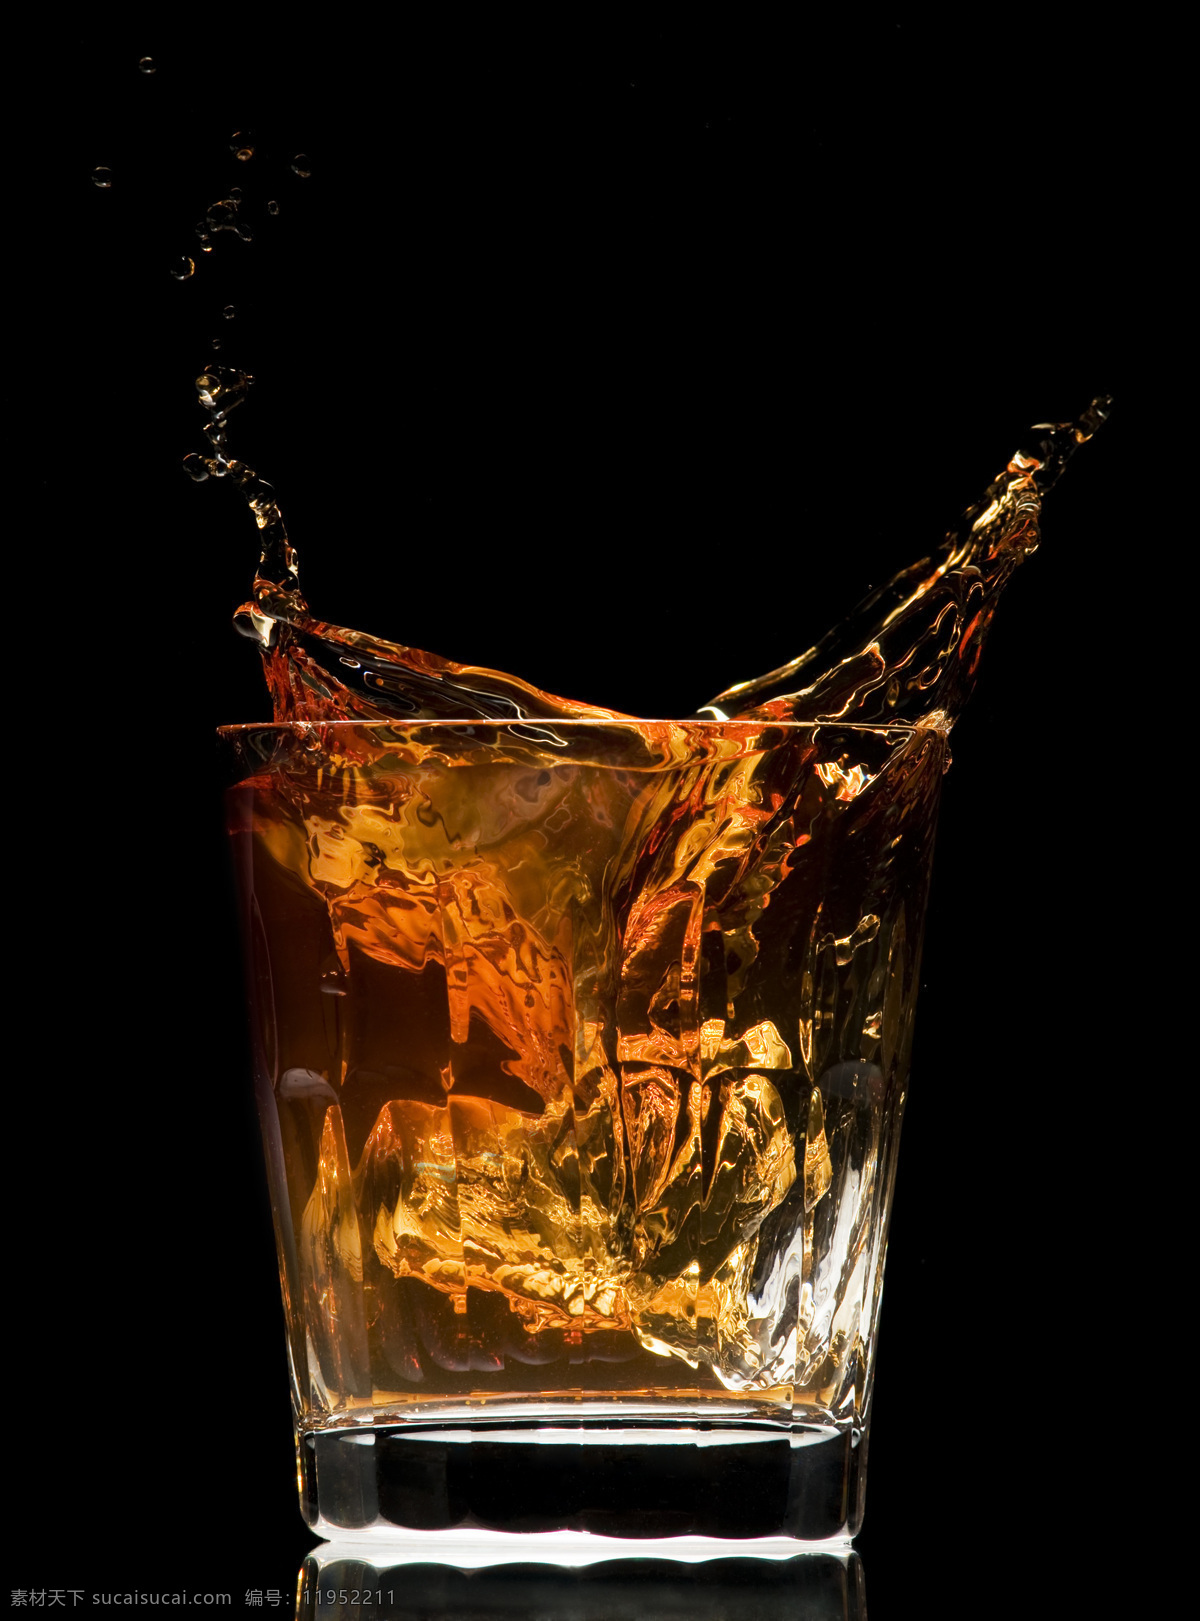 威士忌酒水 威士忌 酒水 冰块 动感 饮料酒水 餐饮美食